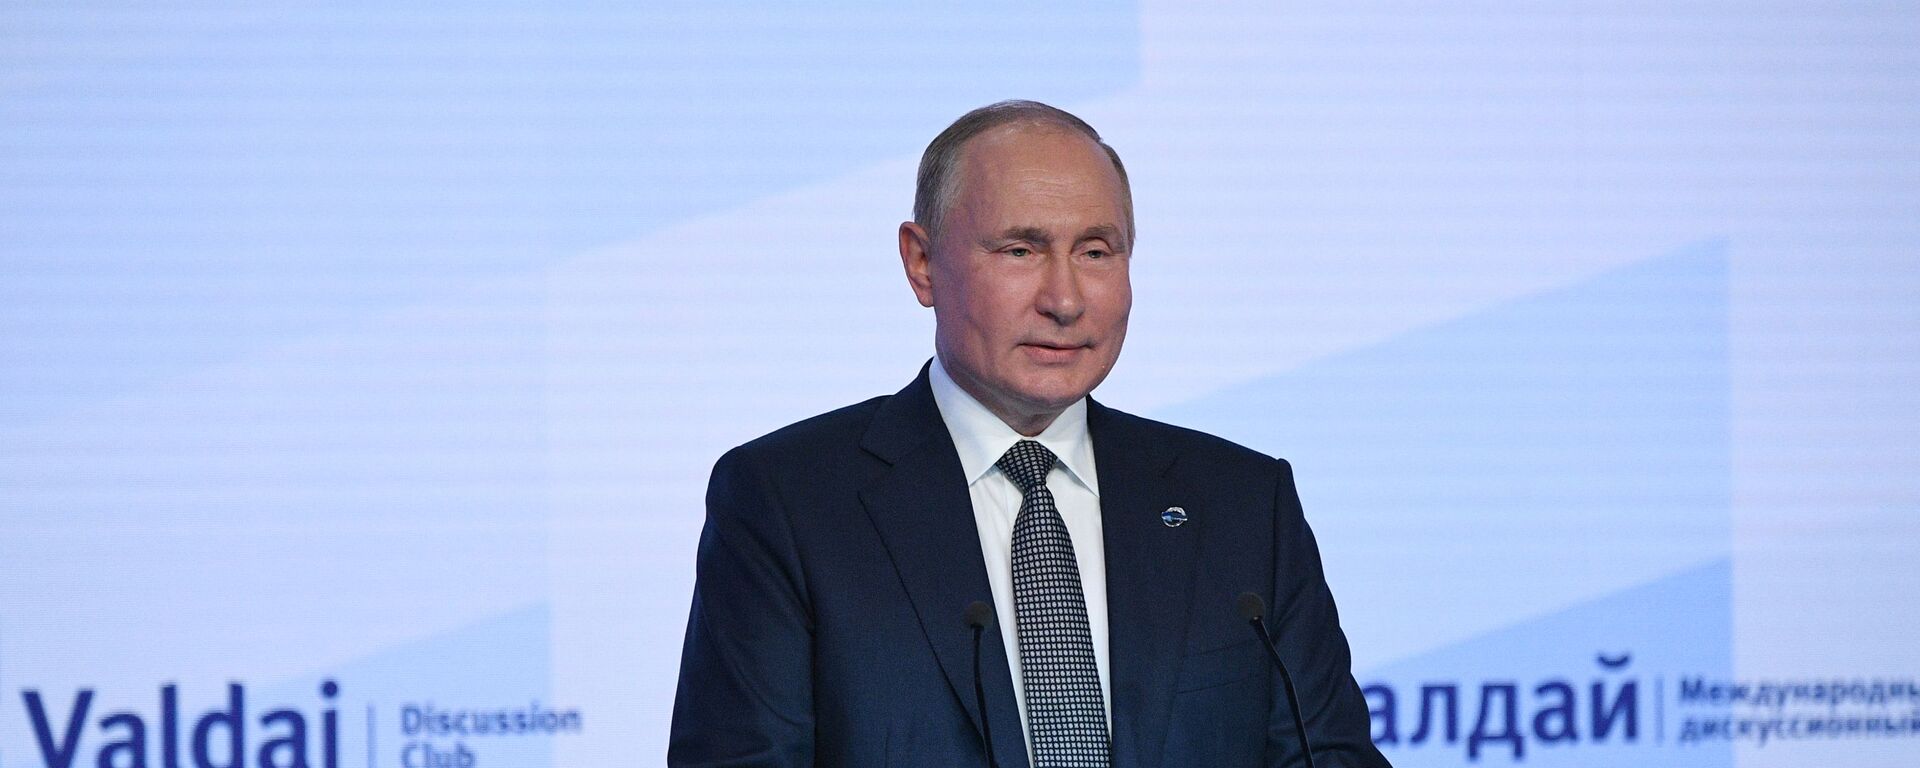 Vladimir Putin, presidente da Rússia, fala em sessão plenária da 18ª Reunião Anual do Clube Valdai de Discussões Internacionais, Moscou, Rússia, 21 de outubro de 2021 - Sputnik Brasil, 1920, 21.10.2021